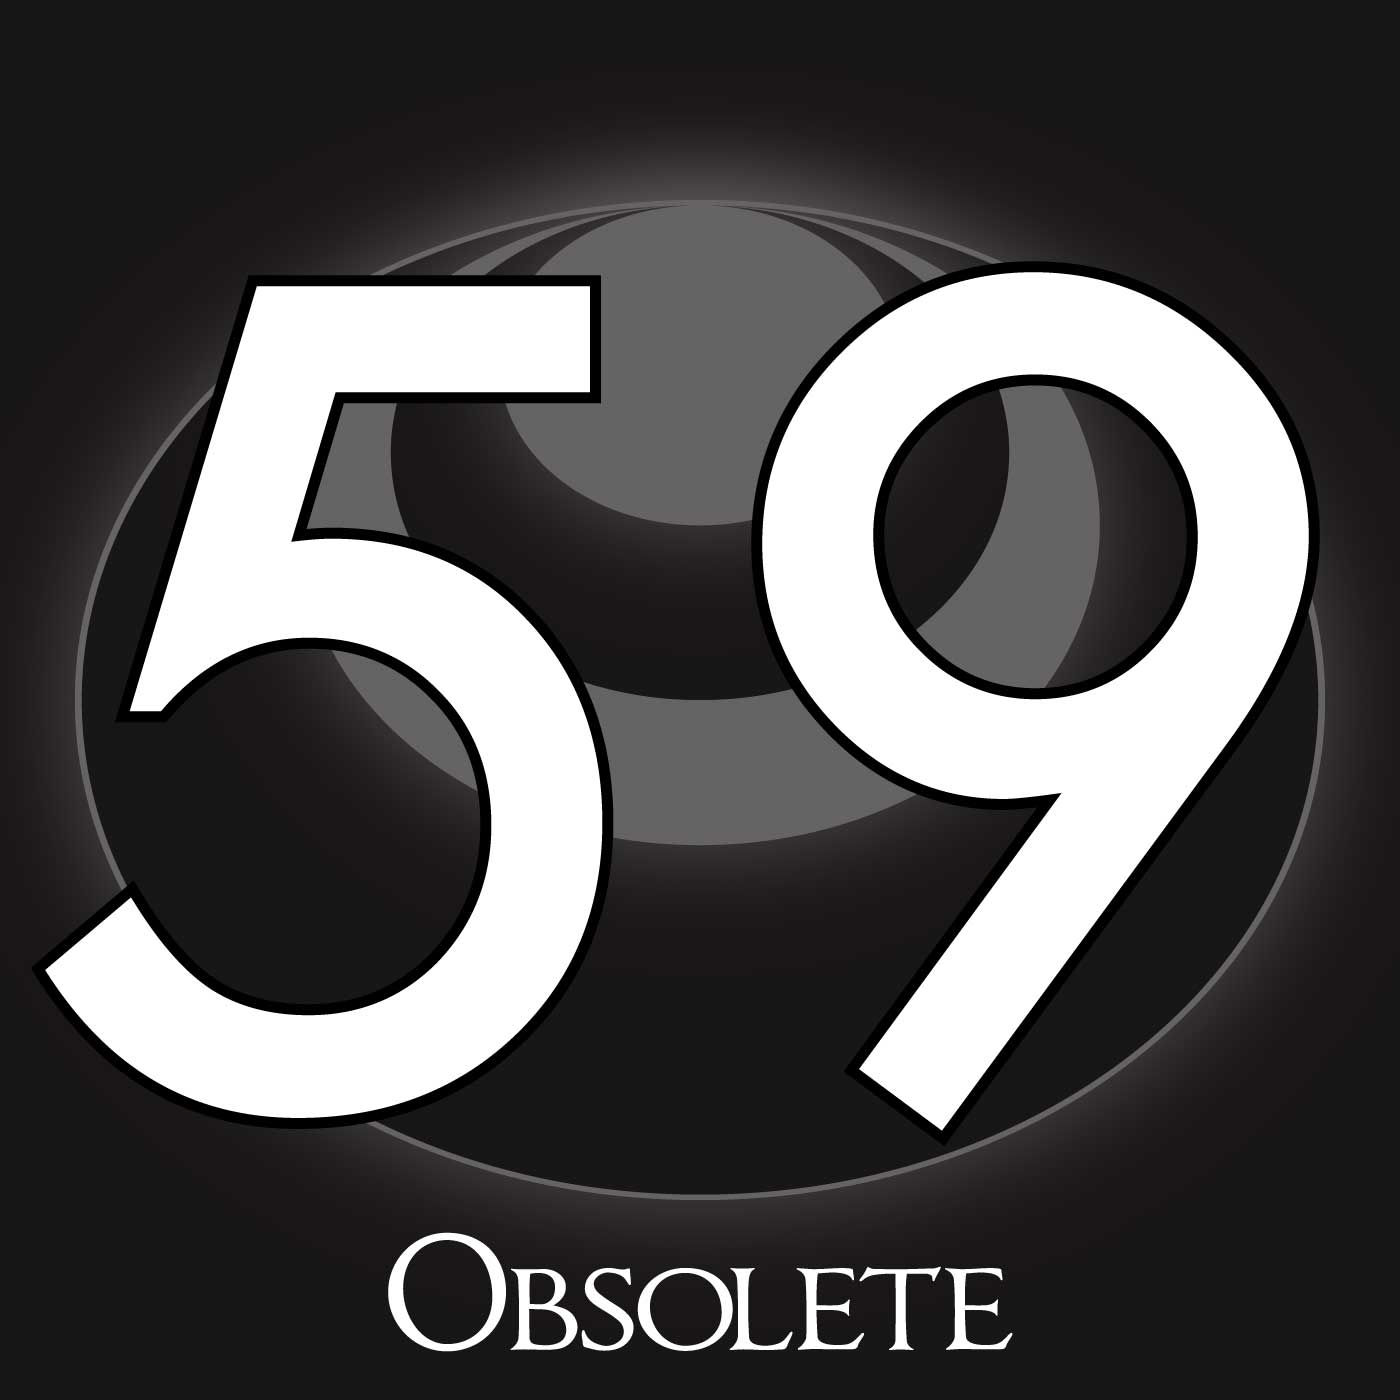 59 – Obsolete